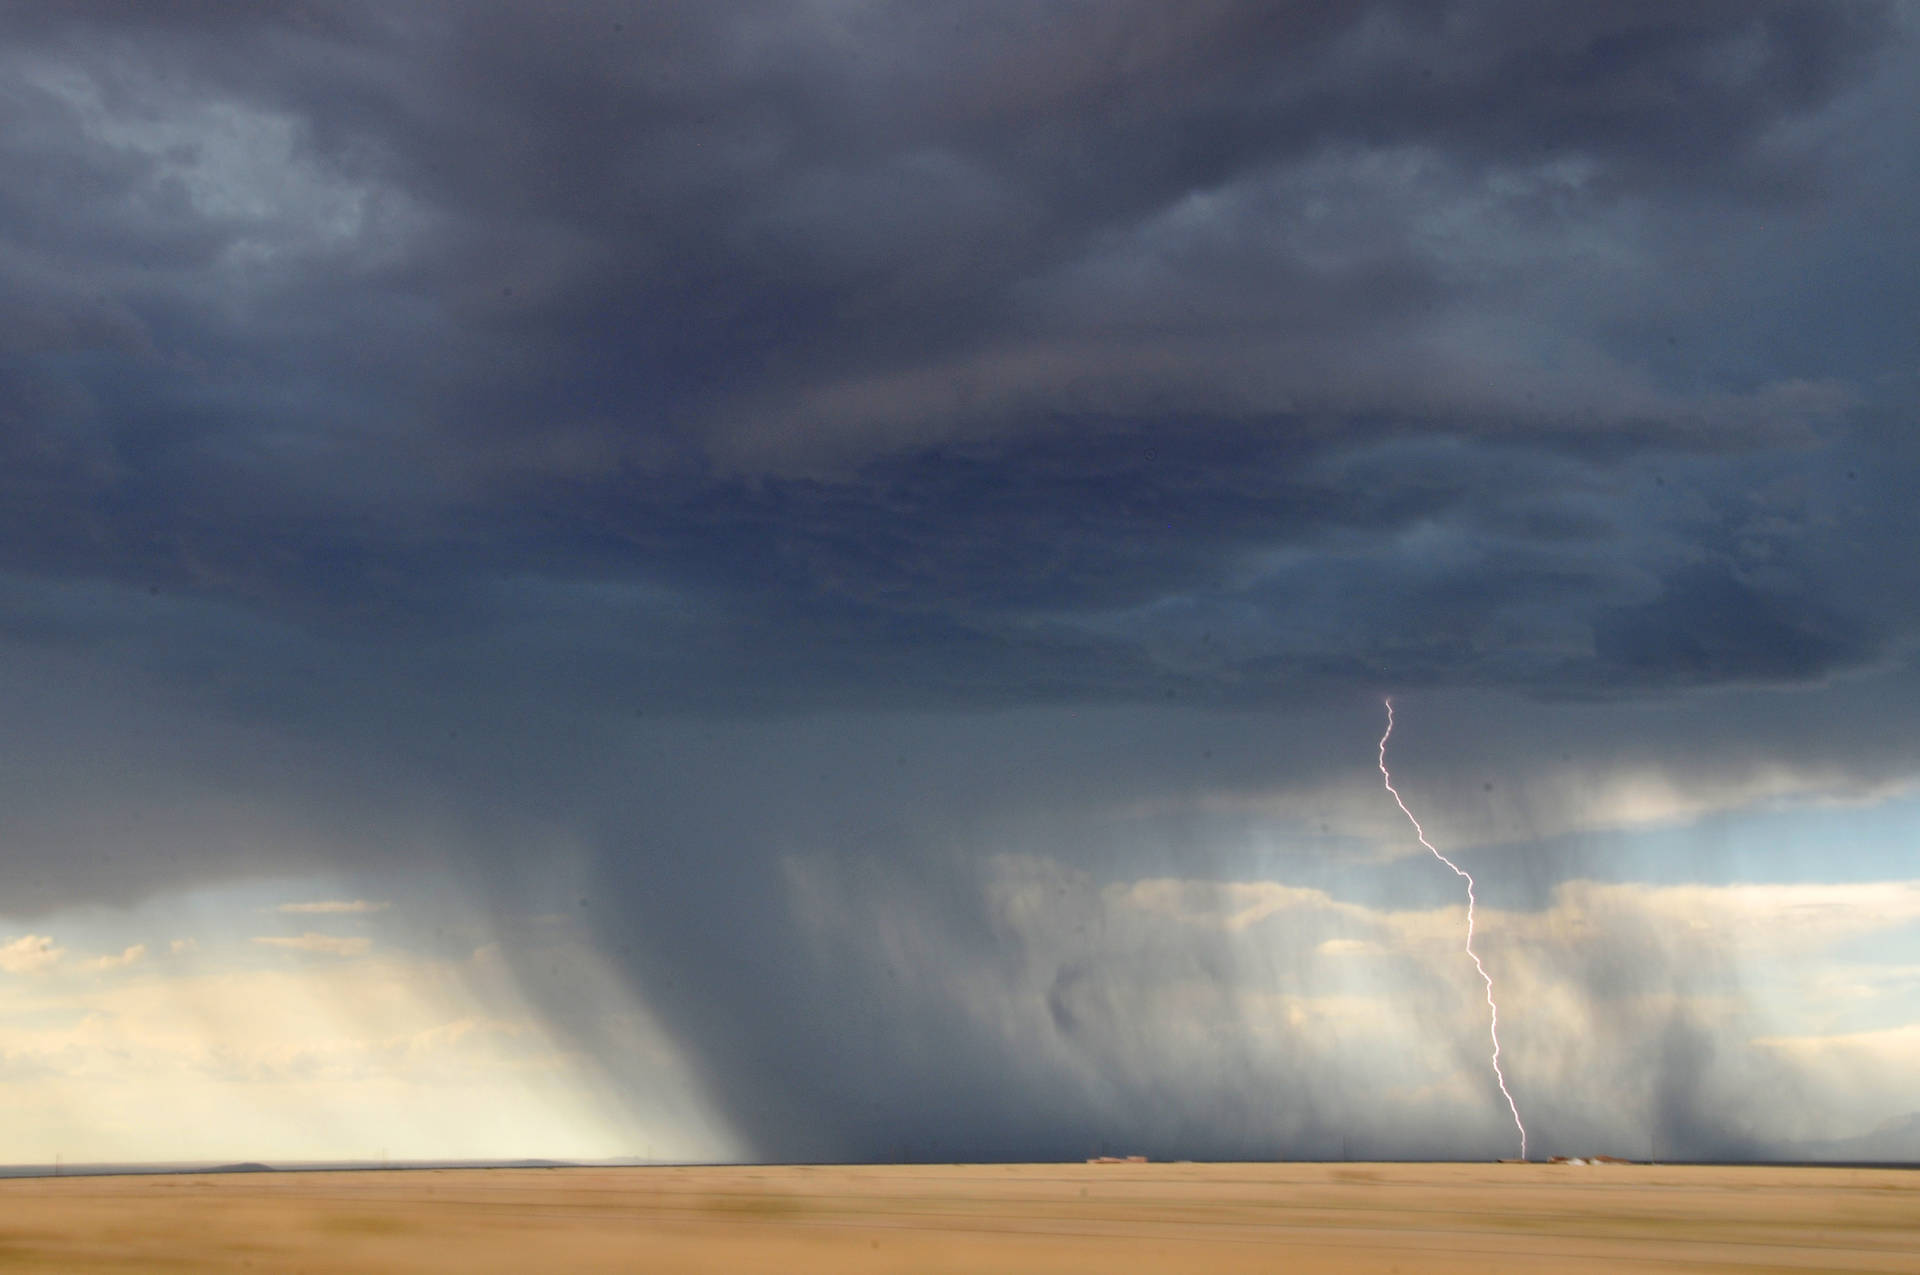 Storm Lightning Strikes At Desert Background